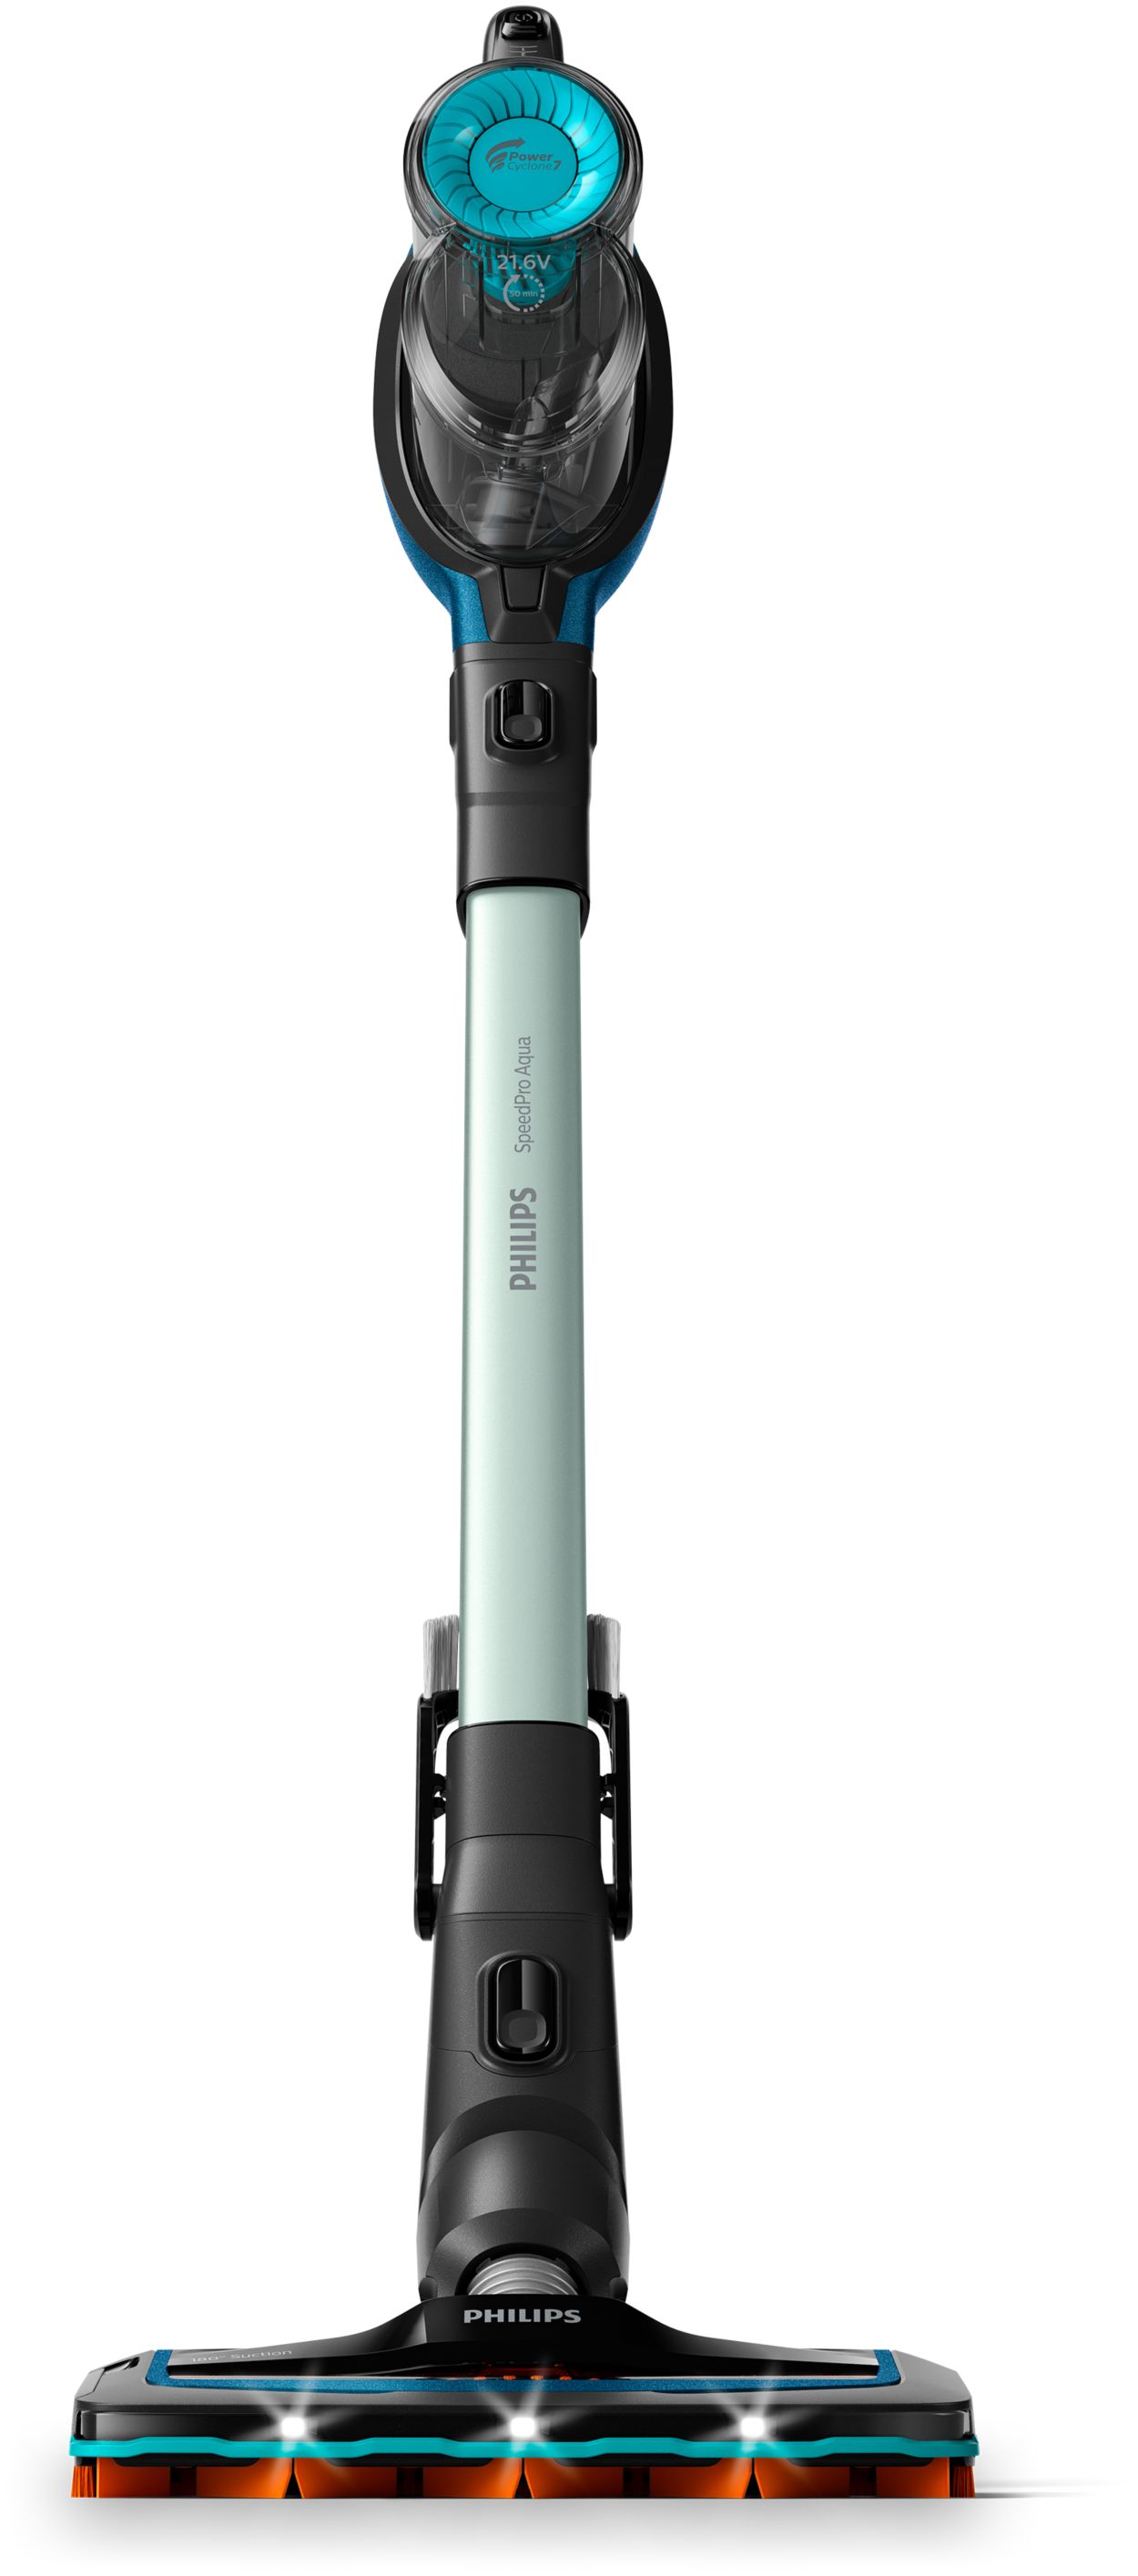 | Philips Aqua SpeedPro vacuum Cordless FC6728/01 cleaner Stick